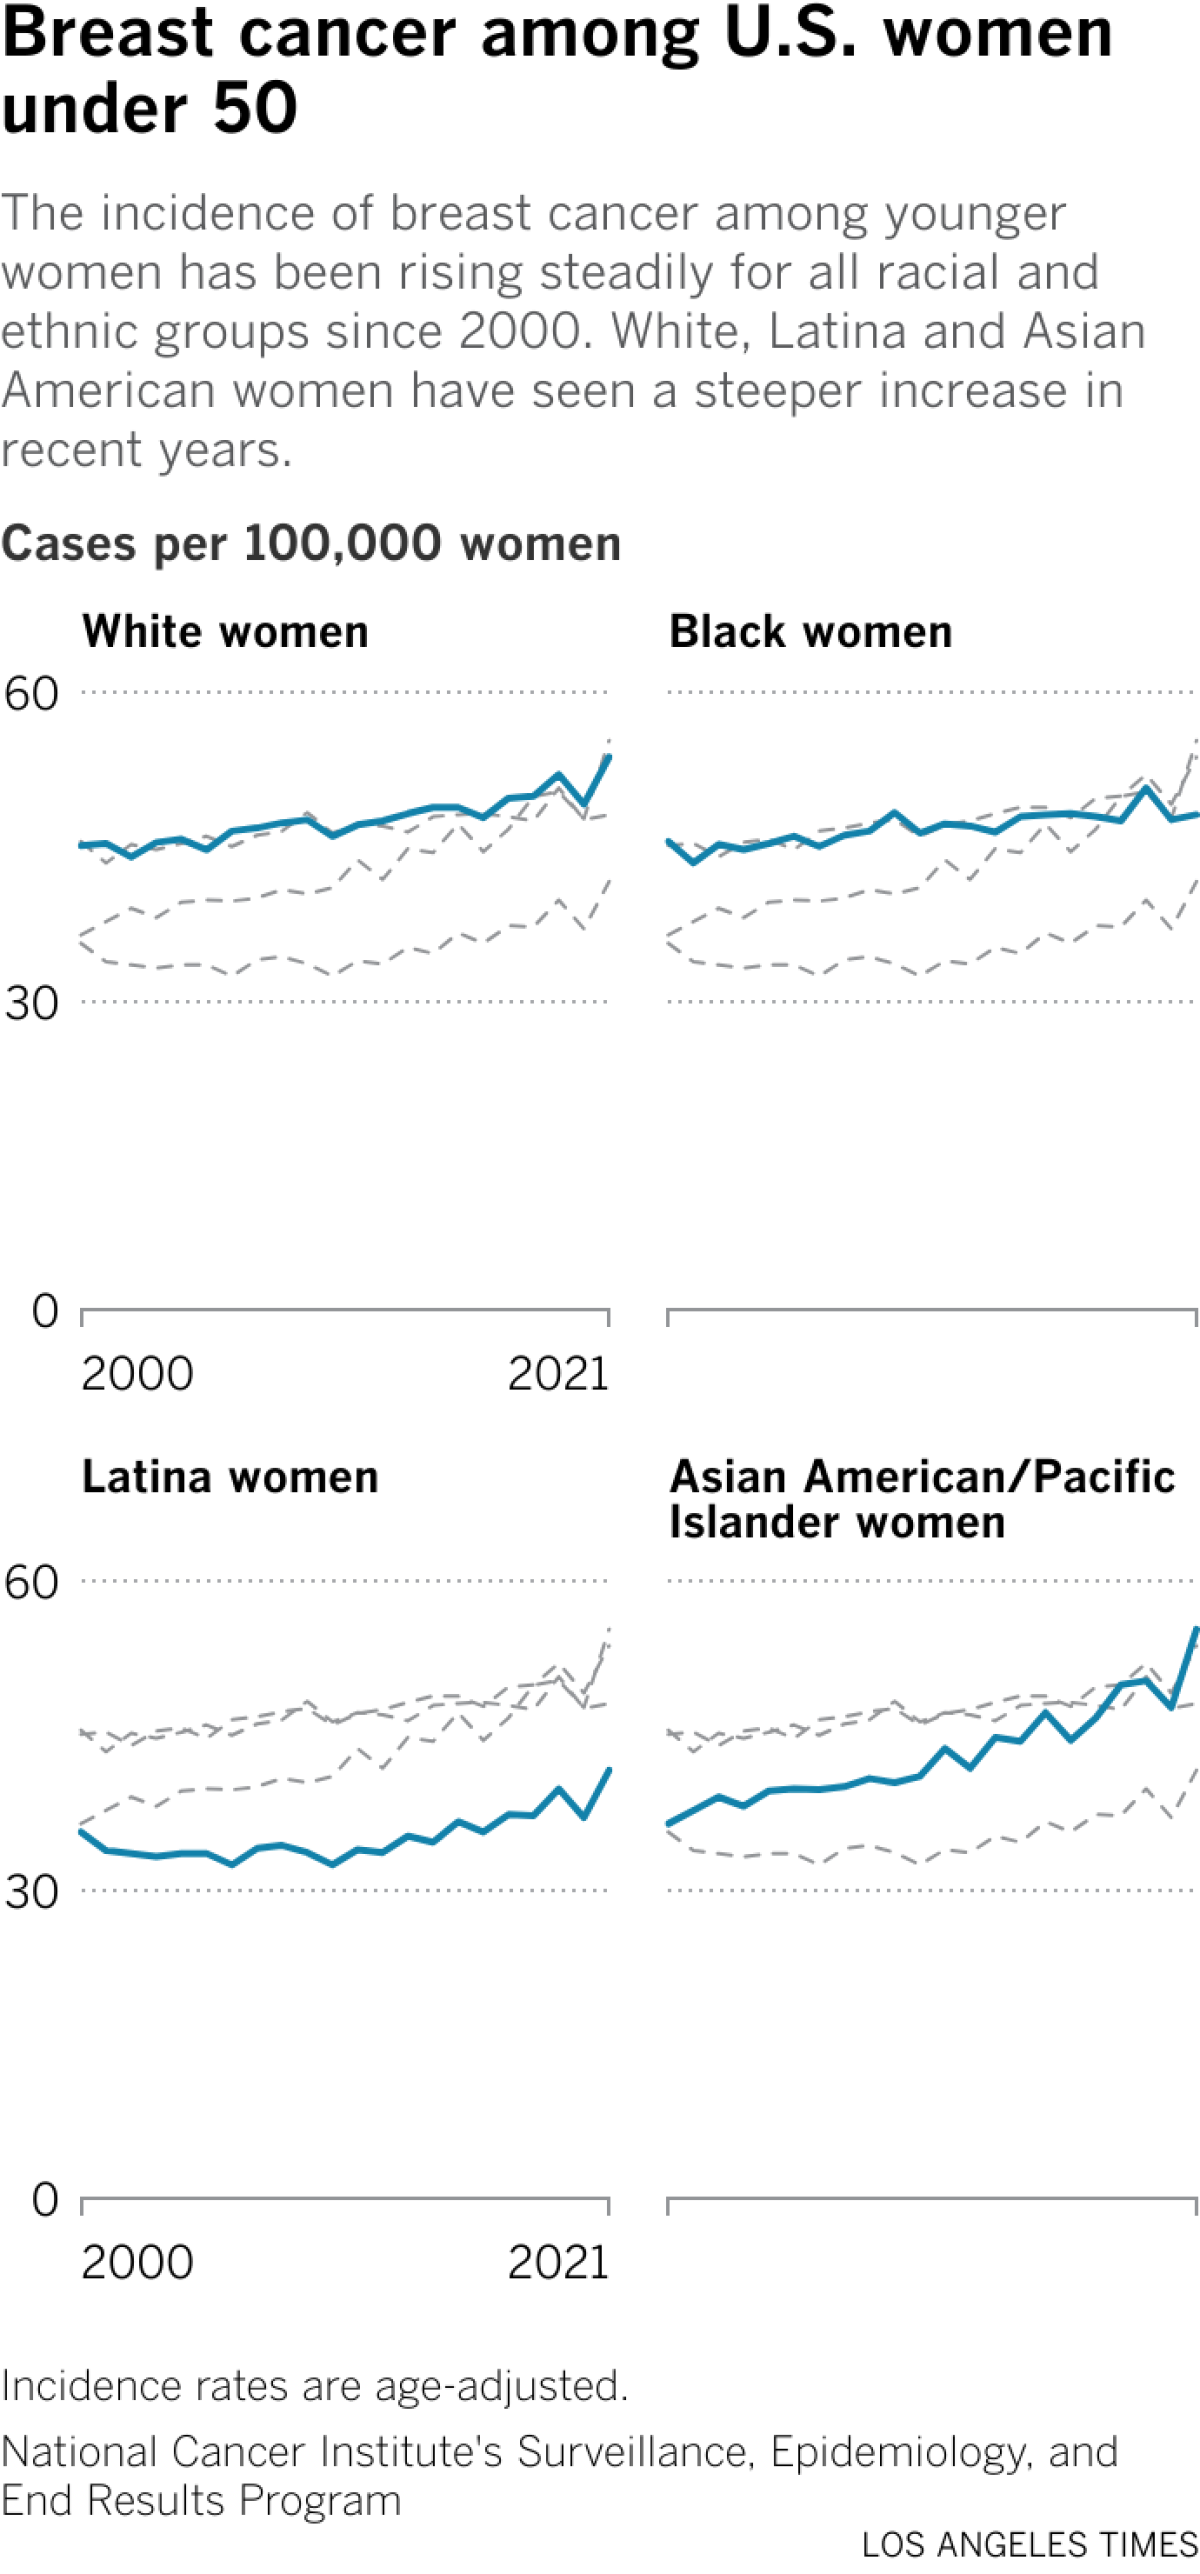 折线图按种族比较了 50 岁以下女性的乳腺癌发病率。  2021 年，白人女性的发病率为每 10 万名女性 53.7 例。 黑人女性的这一比例为 48.1； 拉丁裔女性为 41.6； 亚裔美国人/太平洋岛民女性为 55.3。